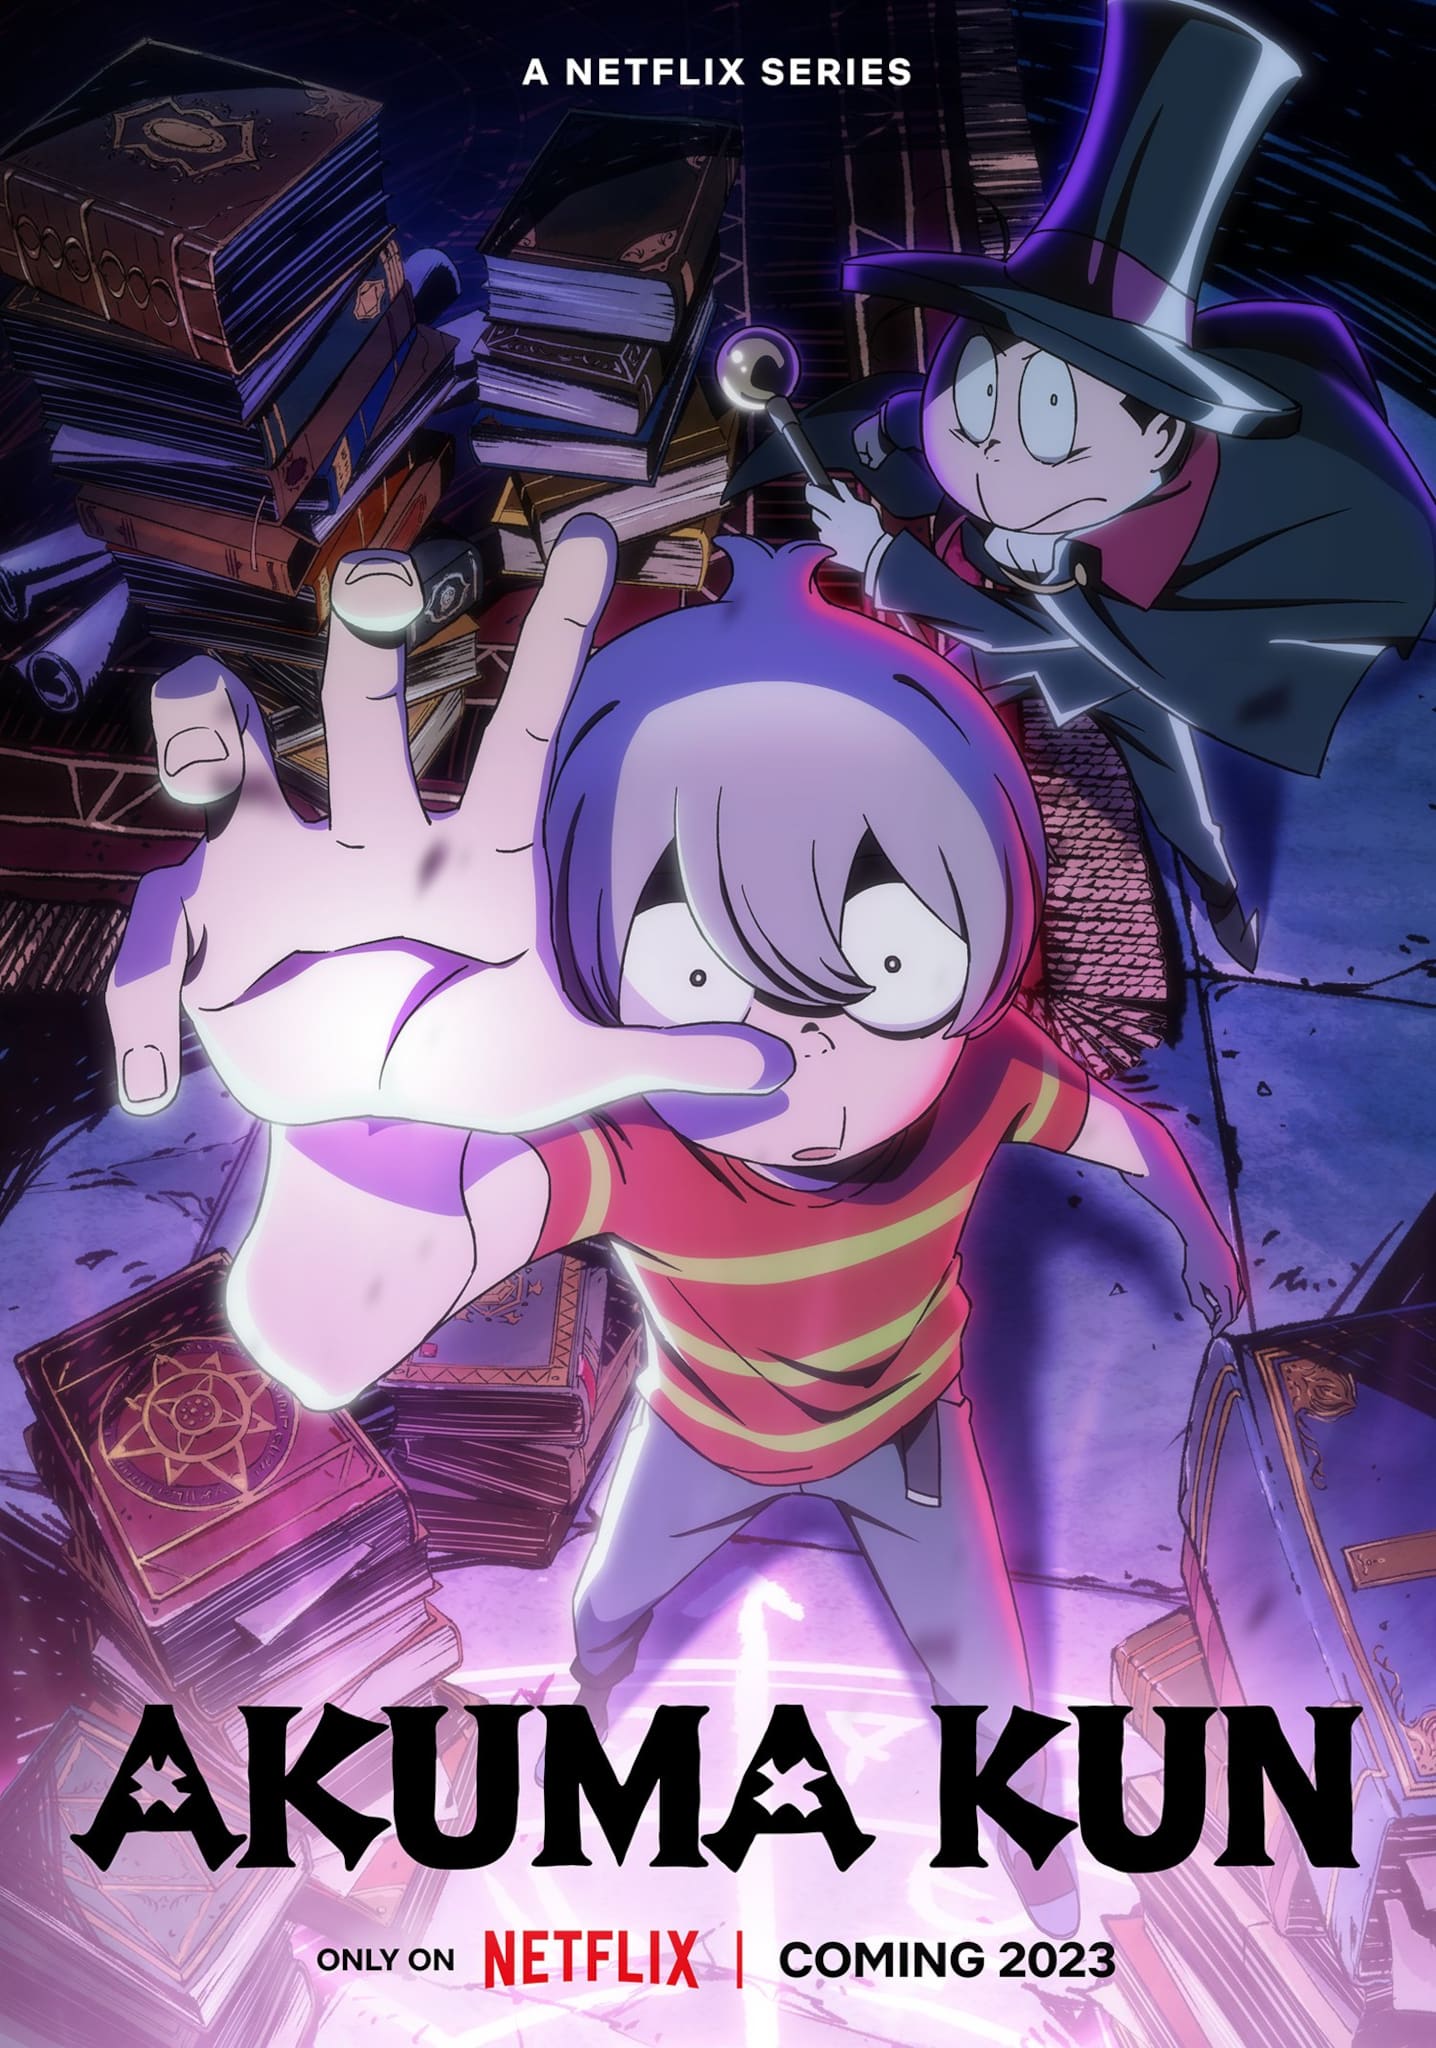 Annonce de la date de sortie du nouvel anime Akuma-kun 2023 sur Netflix